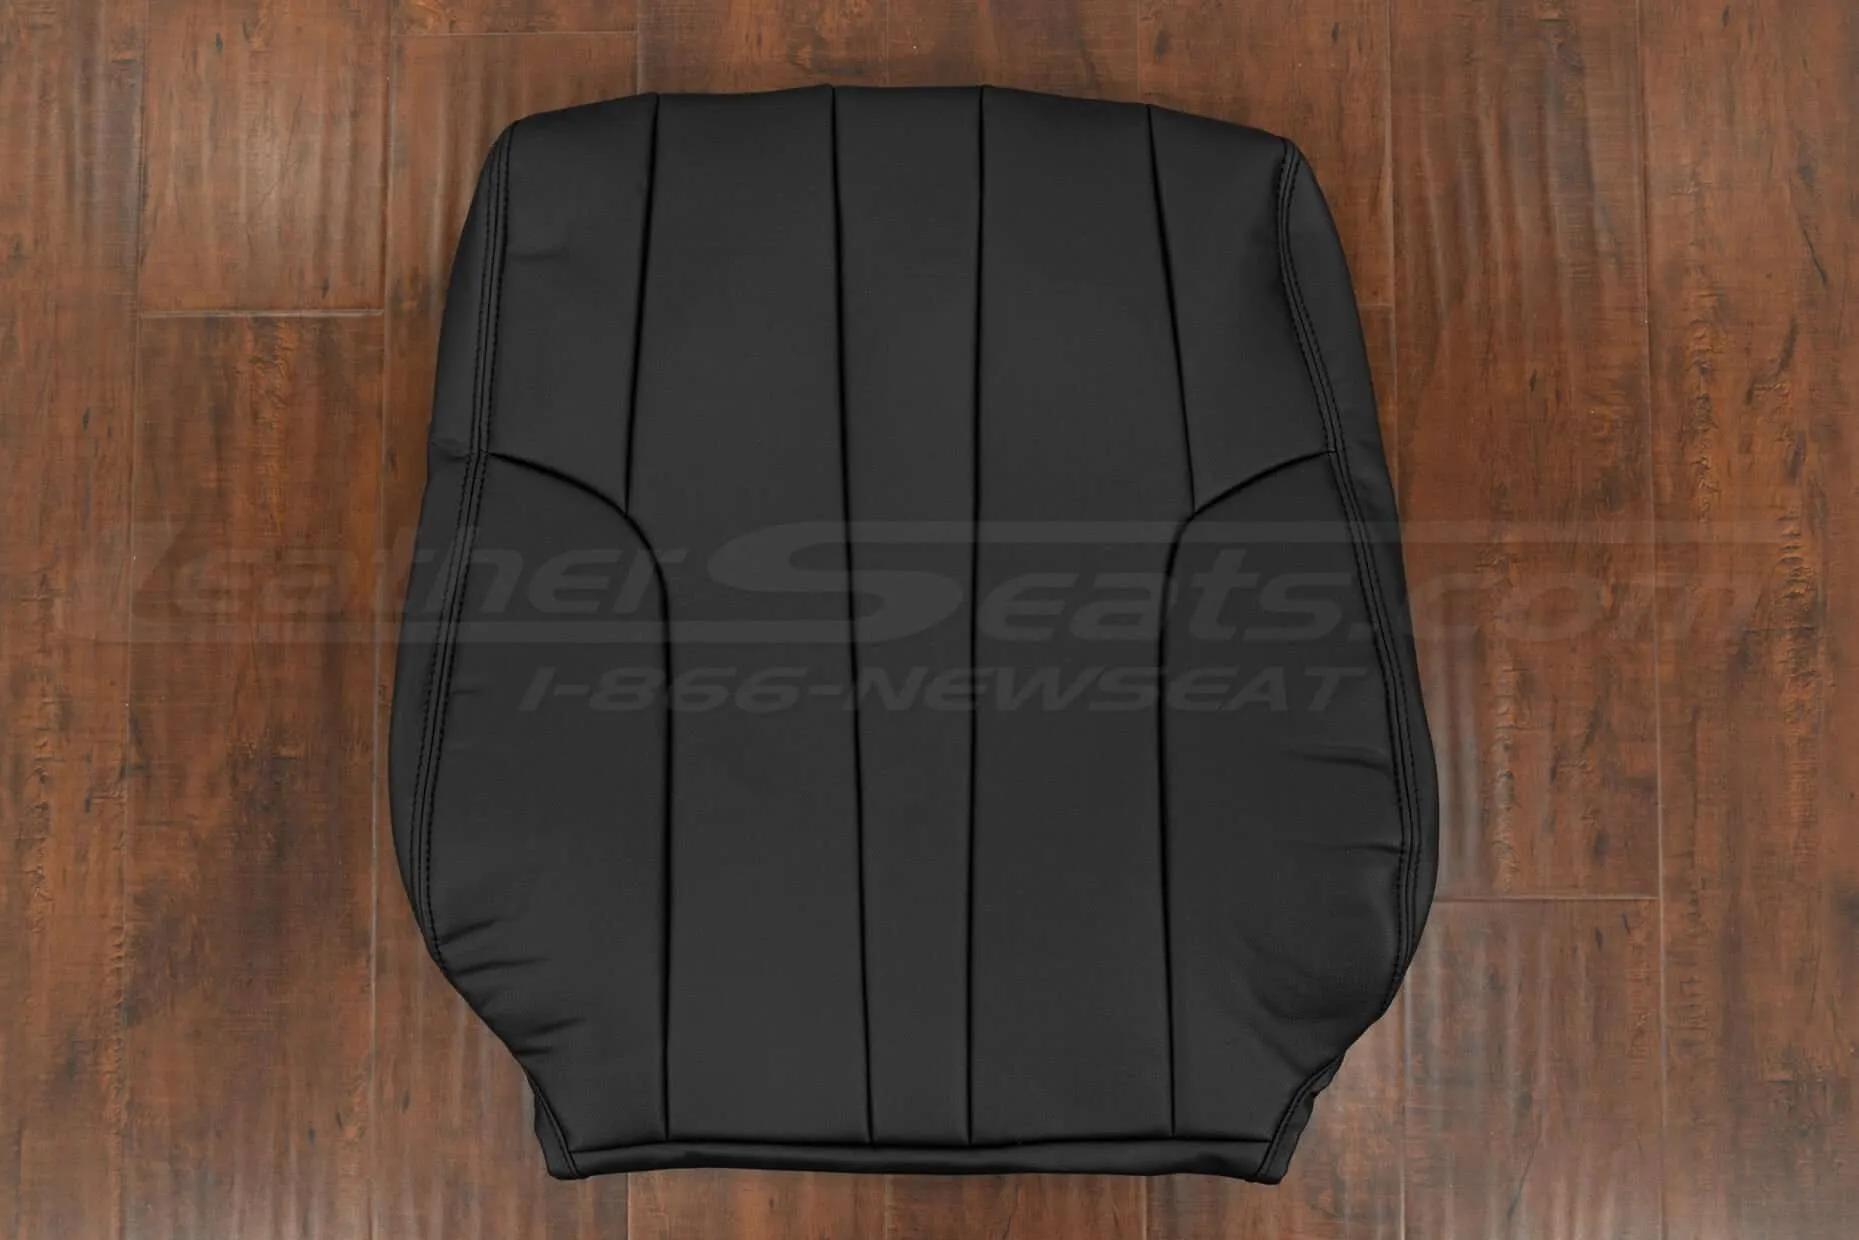 1996 Lexus GS300 Sedan Front backrest upholstery